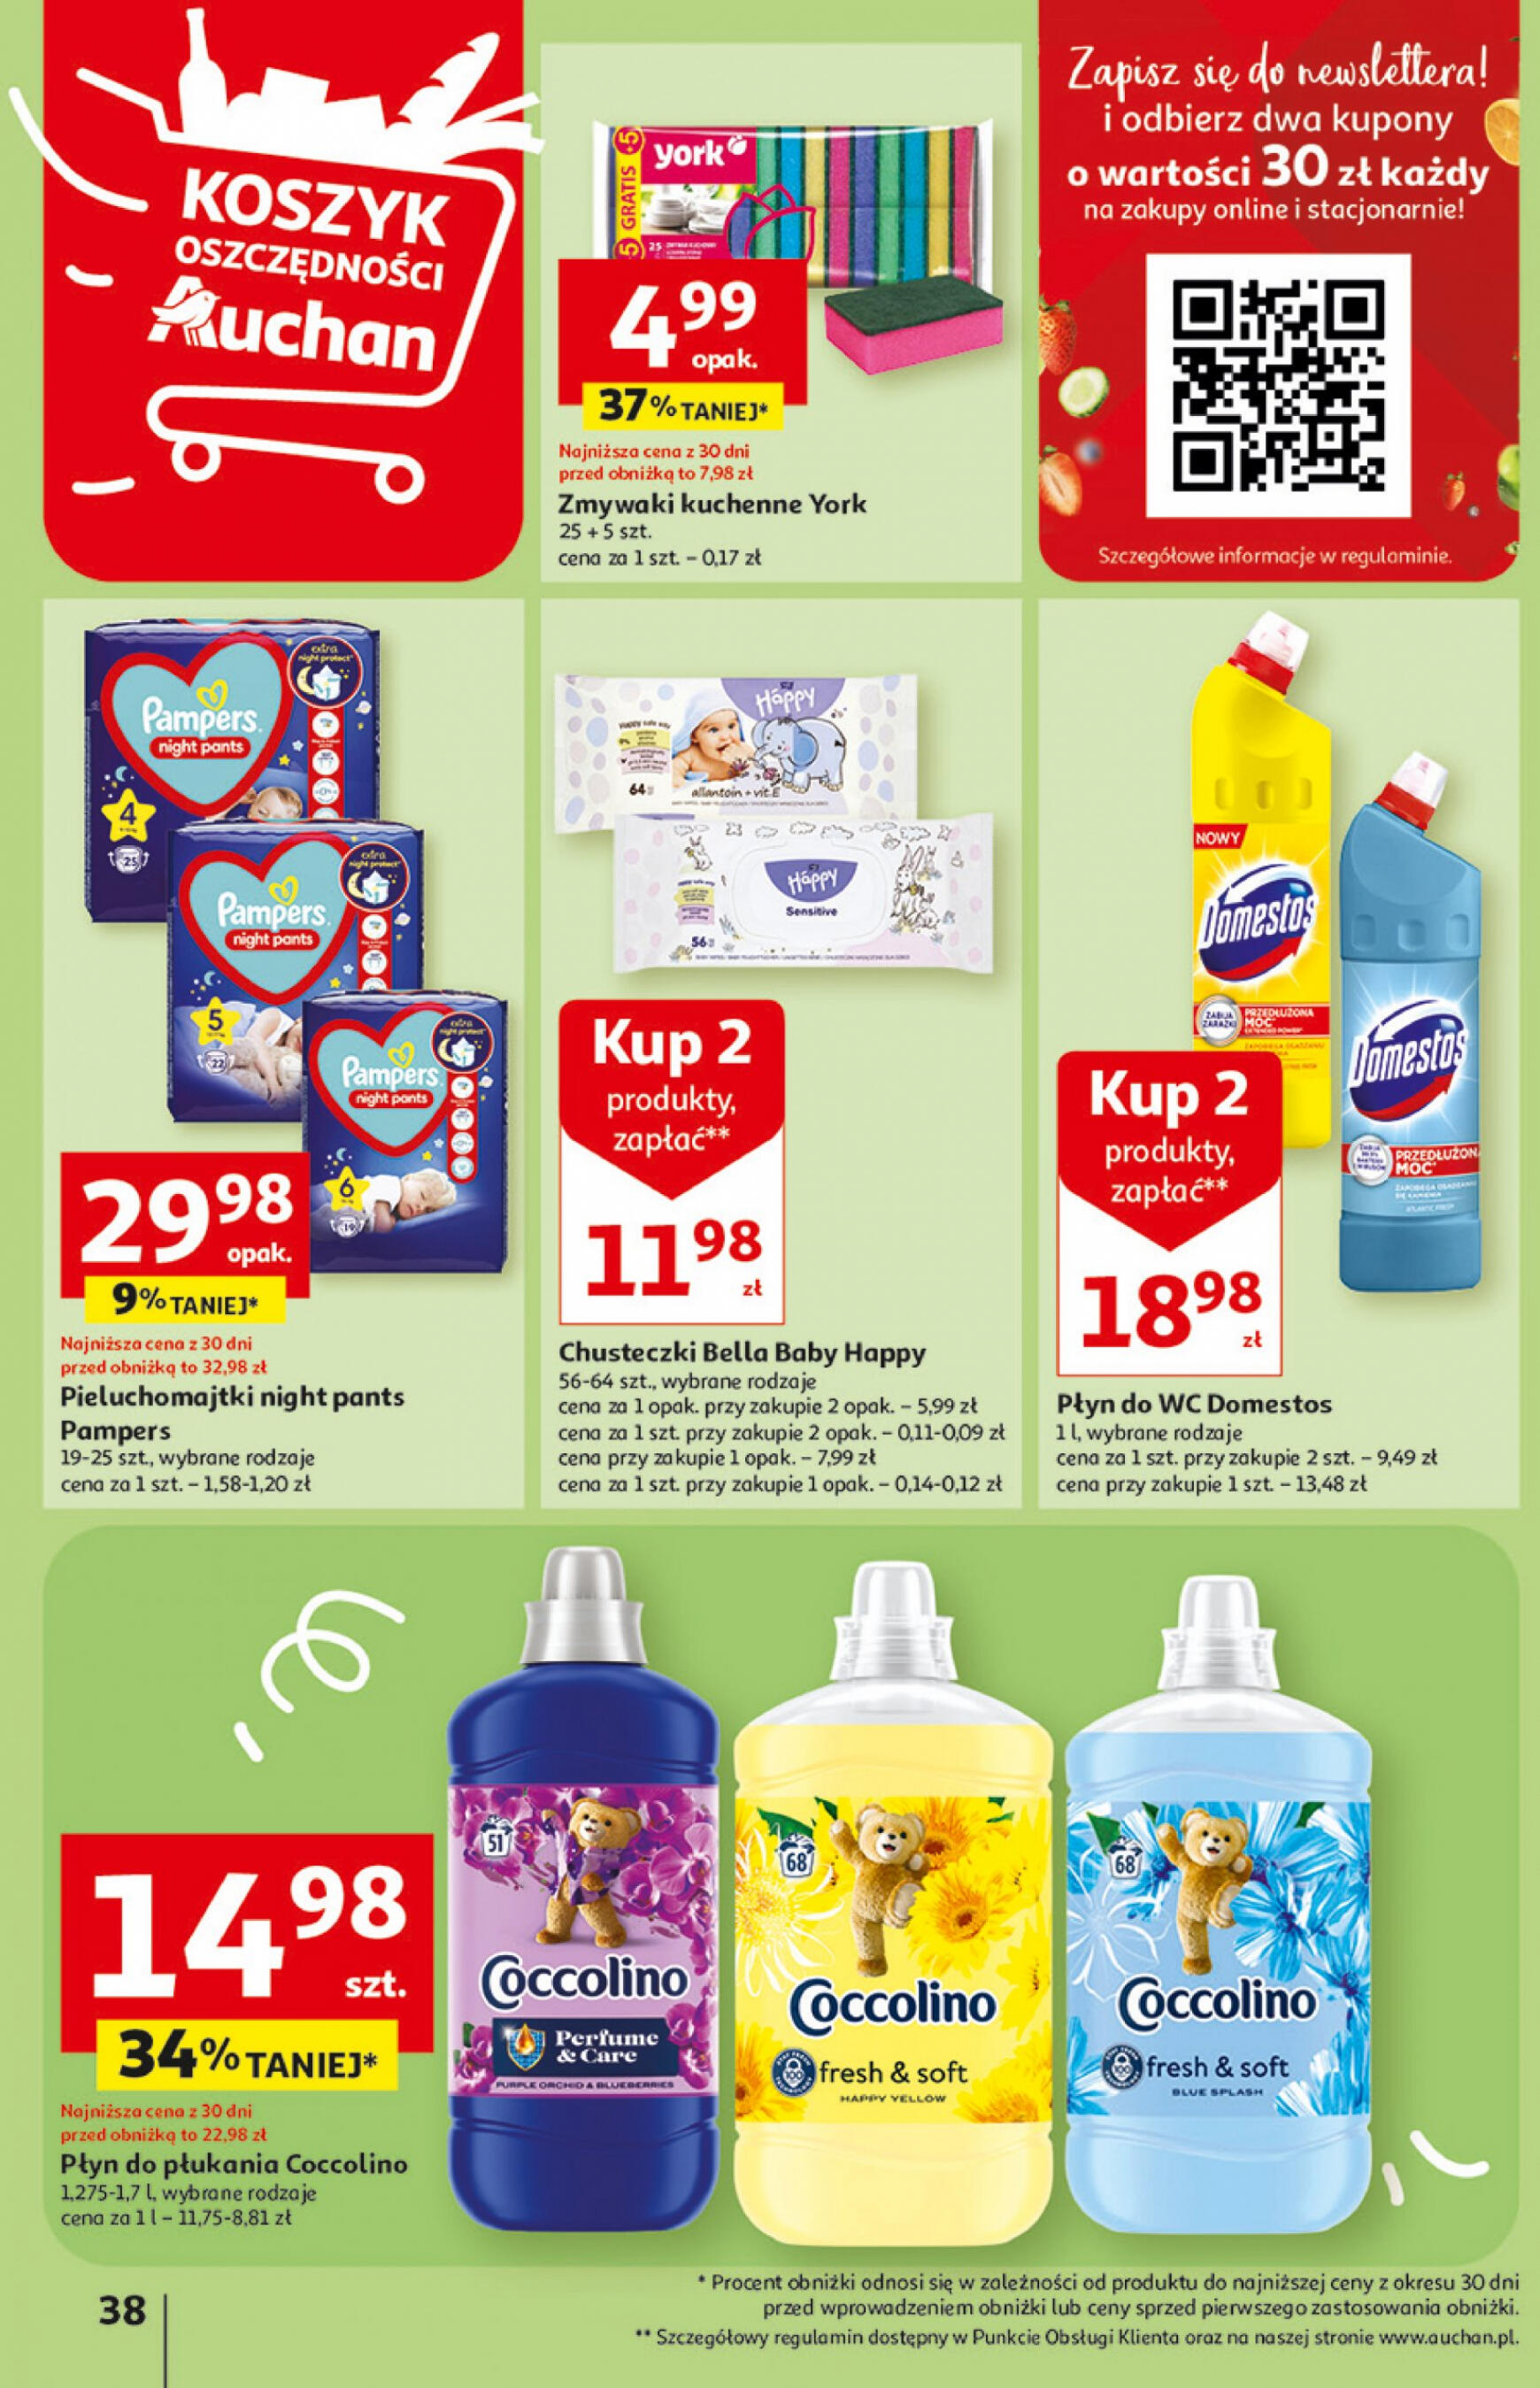 auchan - Hipermarket Auchan - Gazetka Aktywność na świeżym powietrzu! gazetka aktualna ważna od 11.04. - 17.04. - page: 38